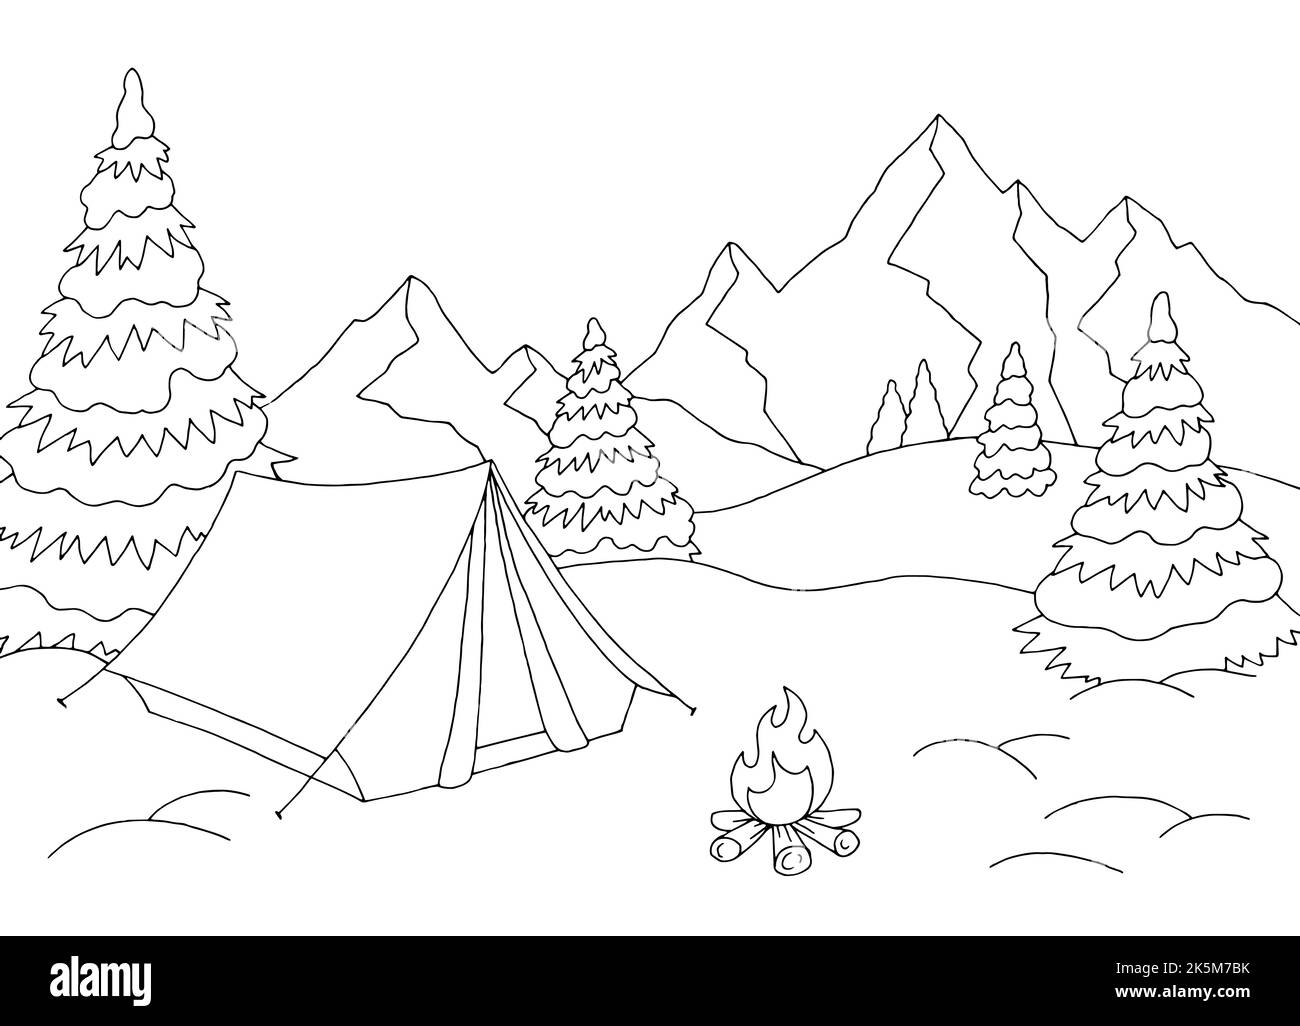 Hiver camping graphique neige paysage montagne esquisse illustration vecteur Illustration de Vecteur